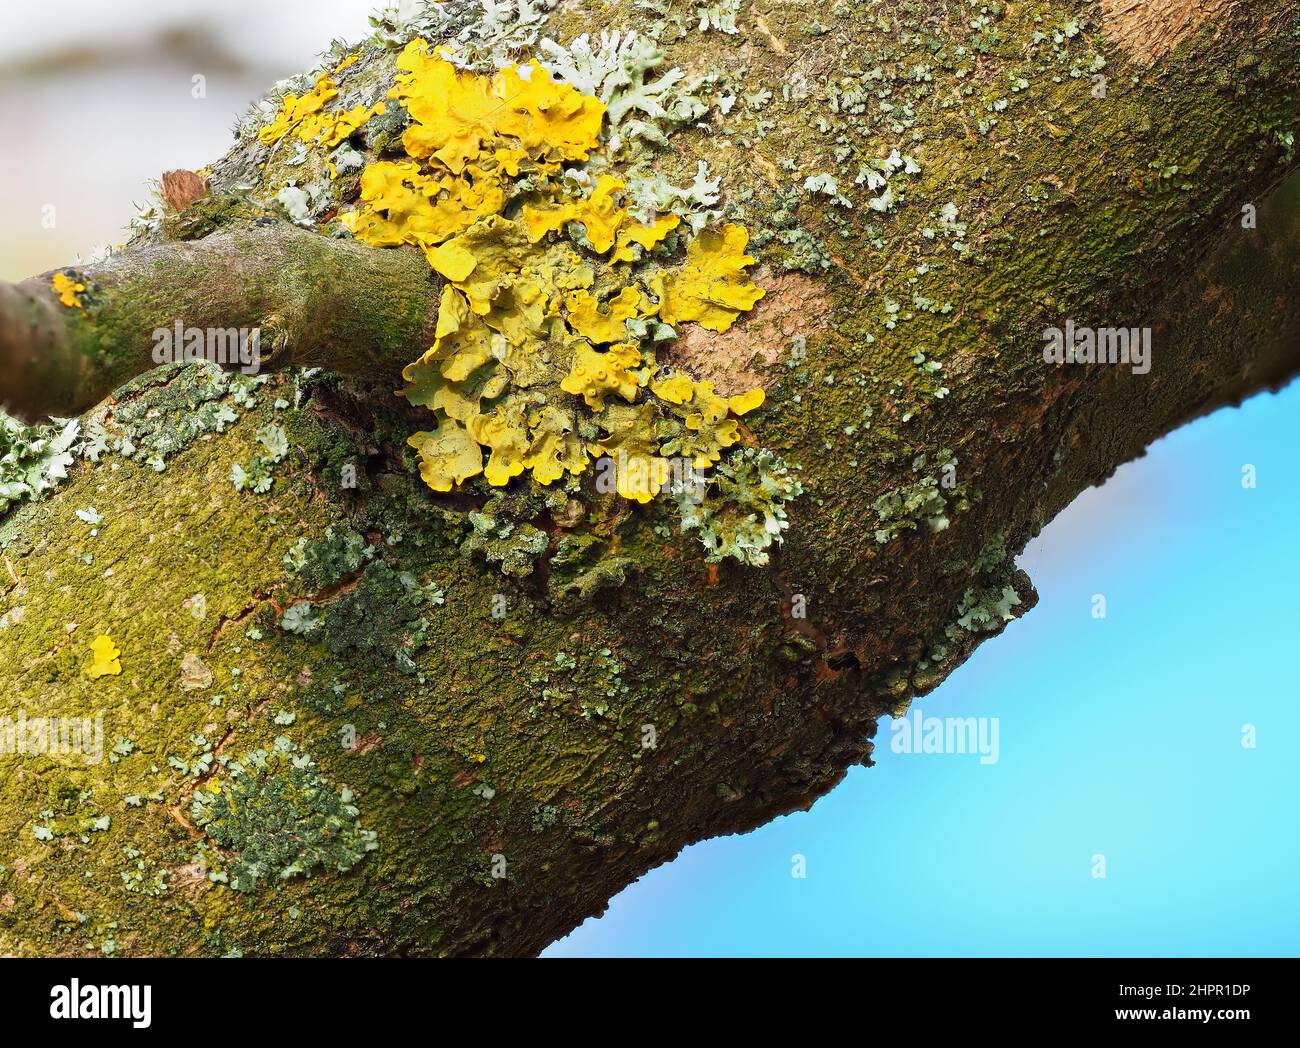 Extreme Nahaufnahme von gelben Flechten und grünem Moos auf der Rinde eines Baumes. Baumstamm bedeckt von Flechten und Moos. Geringer Fokus. Stockfoto